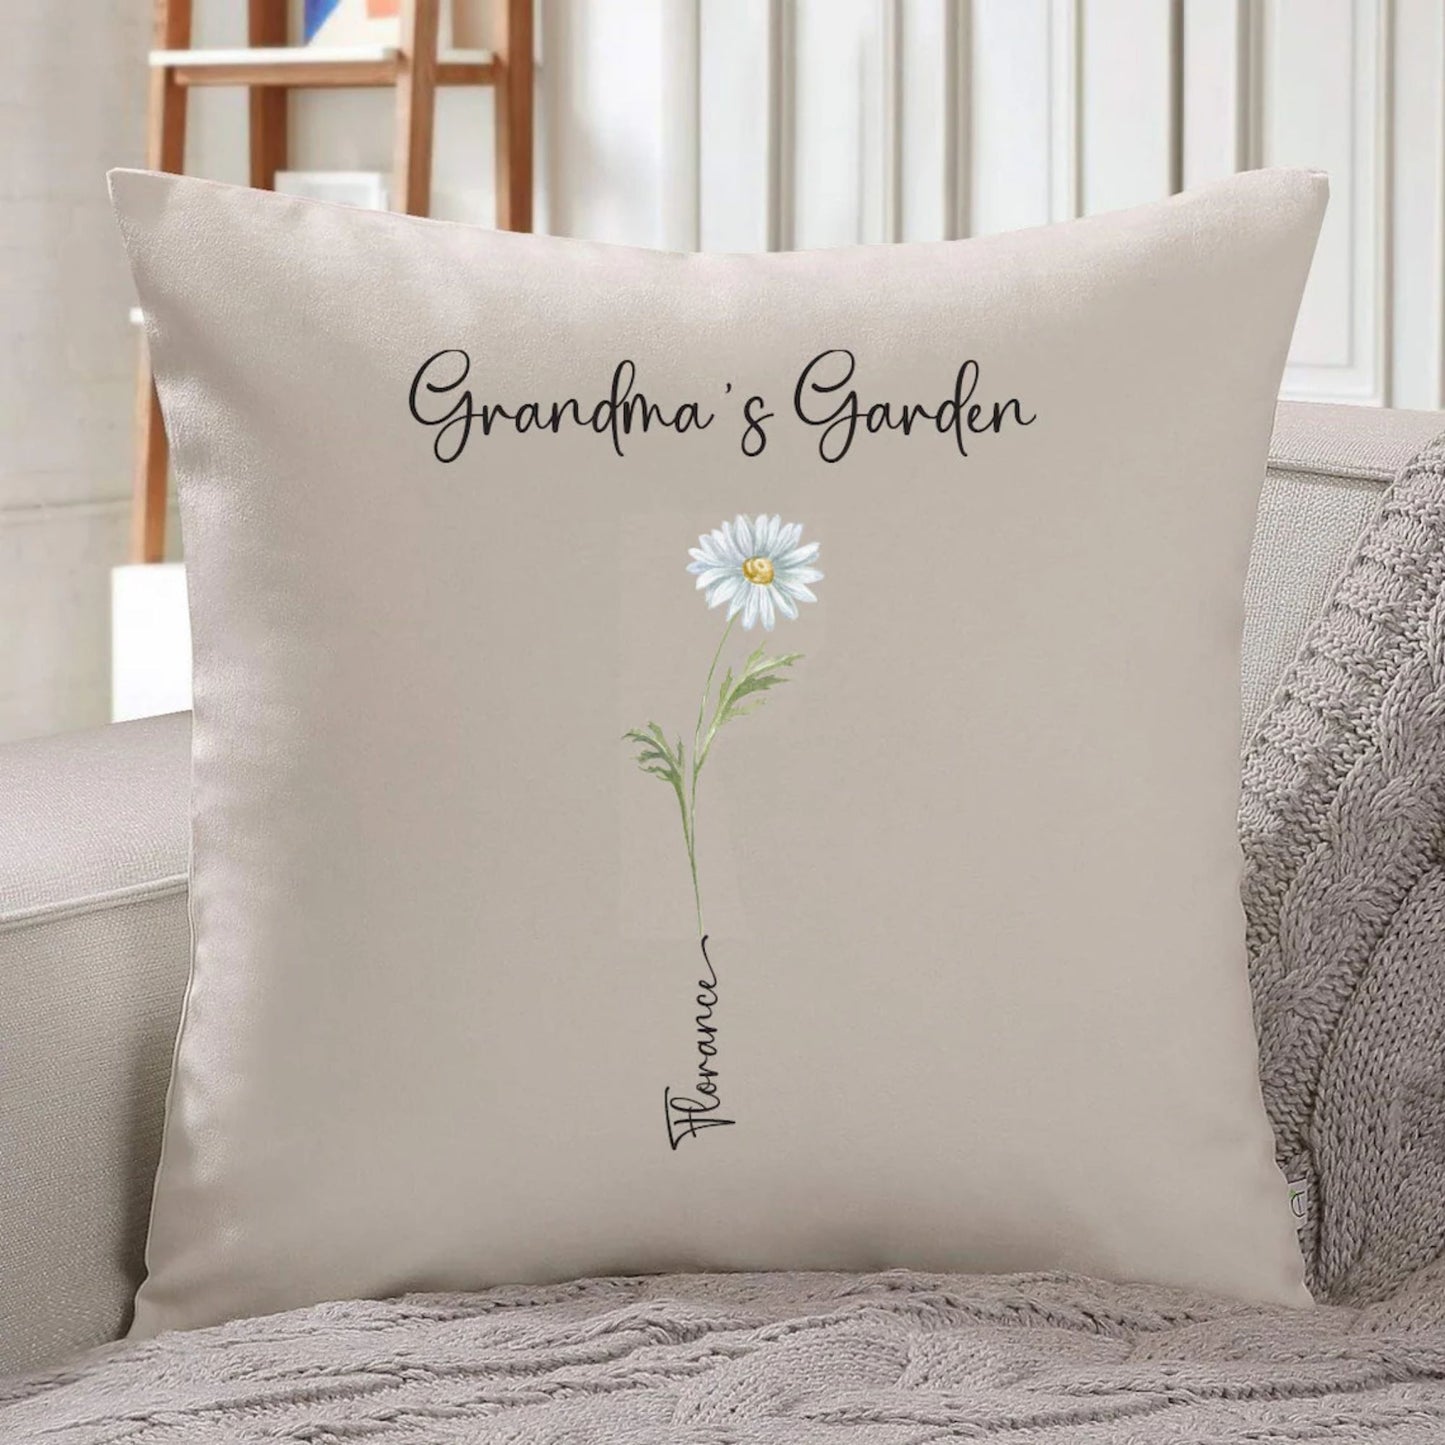 Grandma's garden Pillow with Grandchildren's names, Gift for Grandma